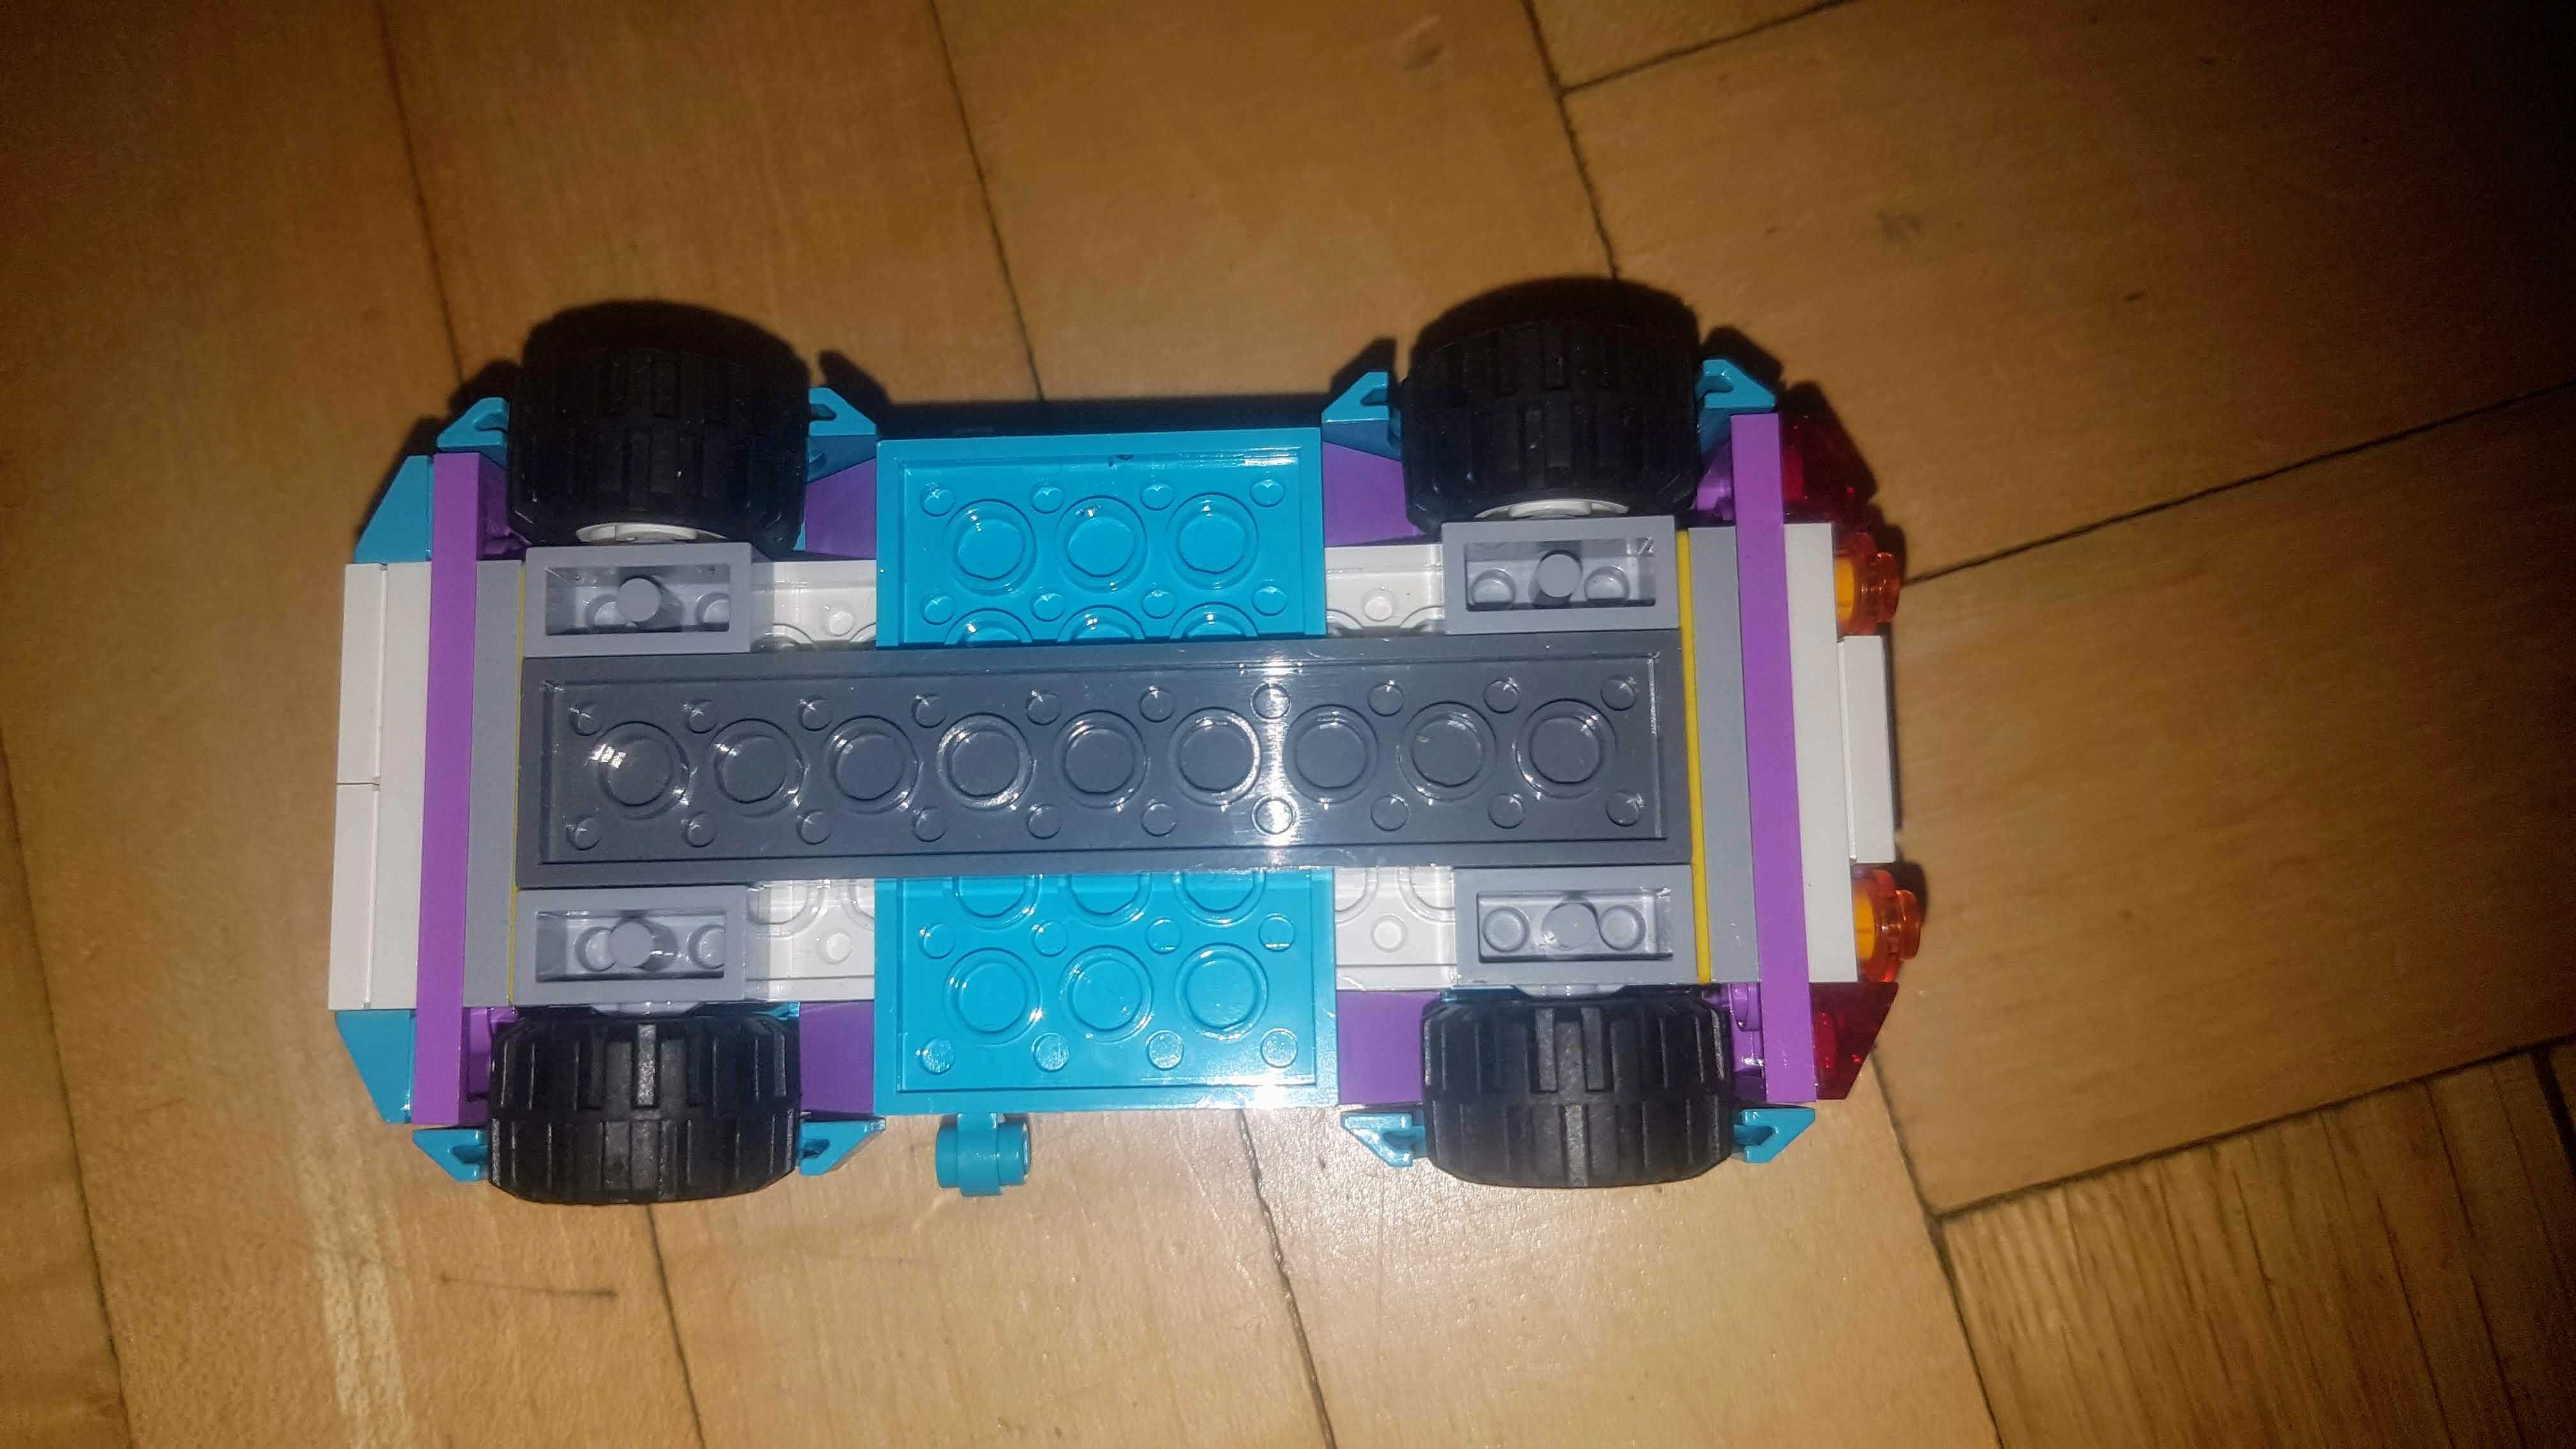 samochód / kabriolet budka z lodami oraz figurka emma LEGO